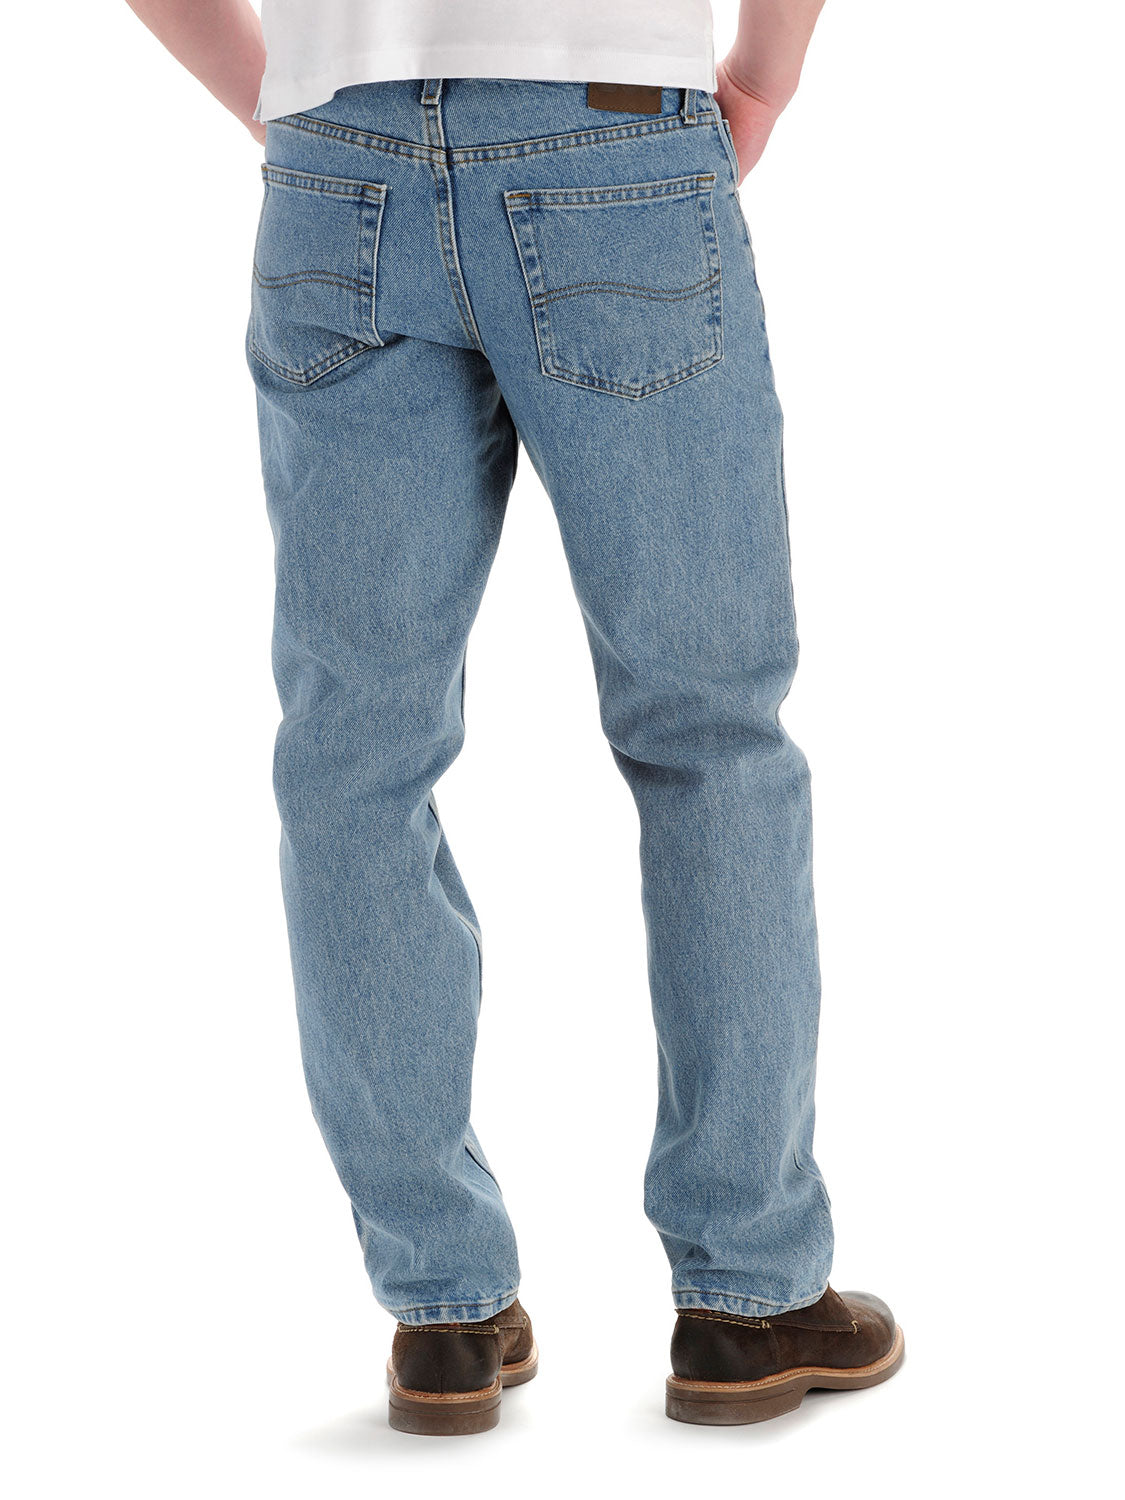 Men's Regular Fit Straight Leg Jeans - Light Stone